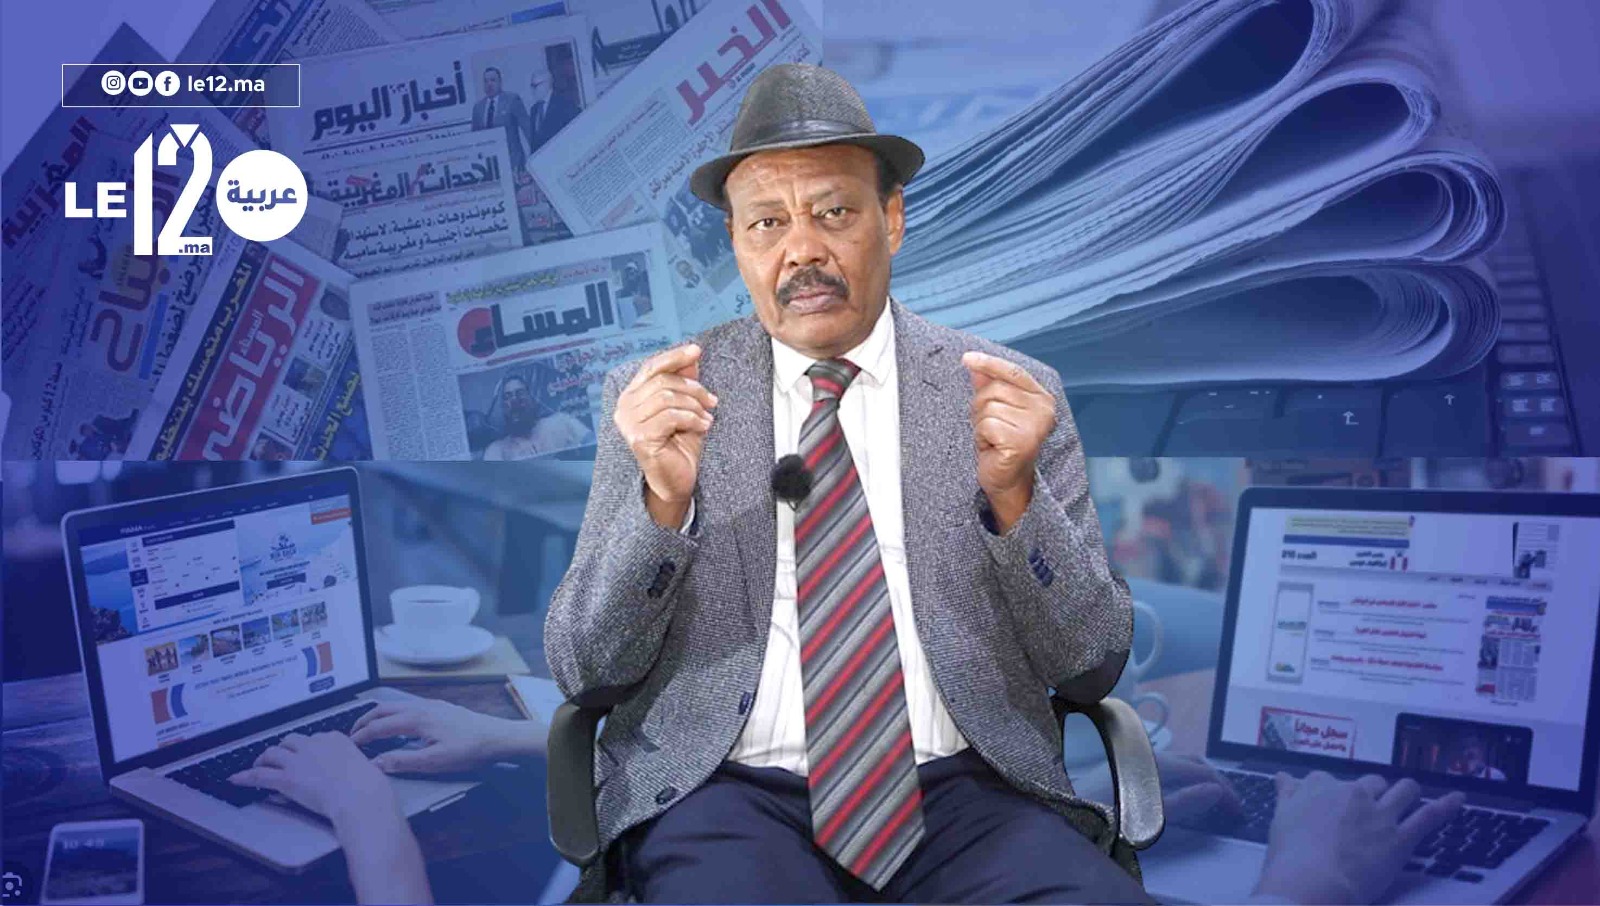 “مع طلحة جبريل”.. يناقش المرسوم الجديد لدعم الصحف الورقية والإلكترونية